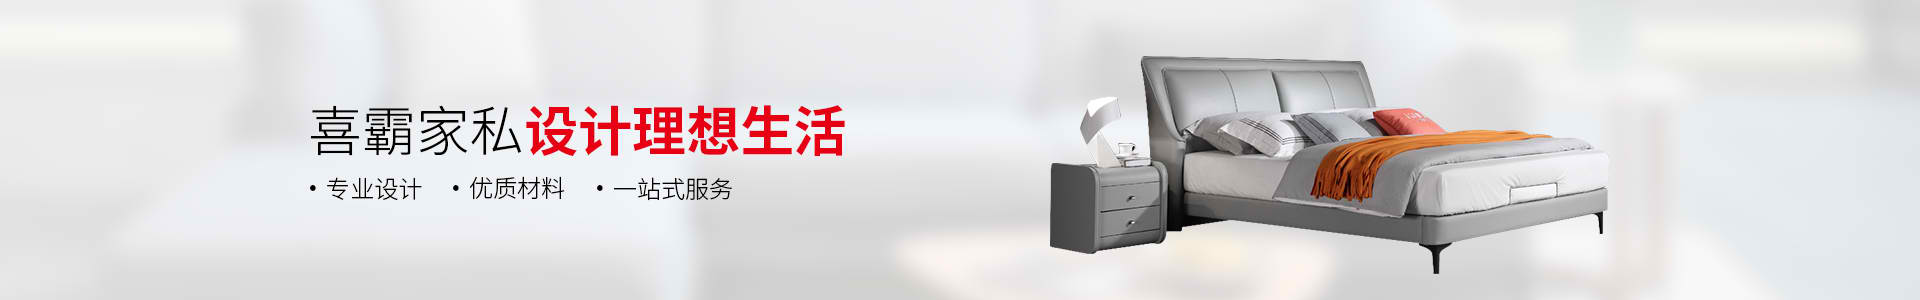 中国办公家具十大品牌-中泰龙启动数夫软件人机一体化智能系统项目